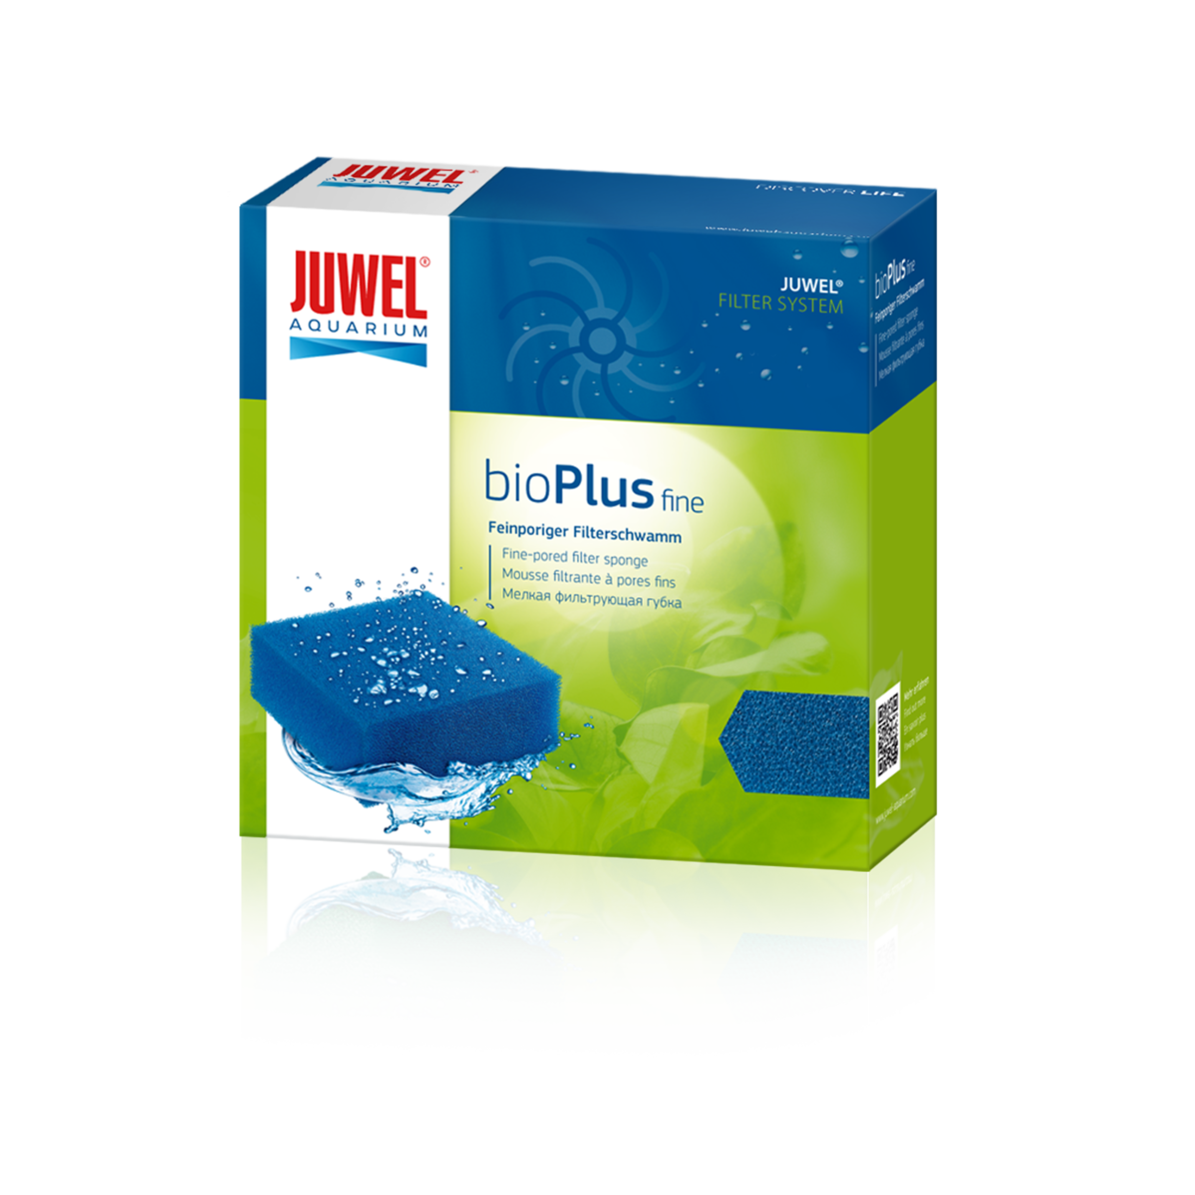 Juwel One Bioplus Filter Sponge - Fine